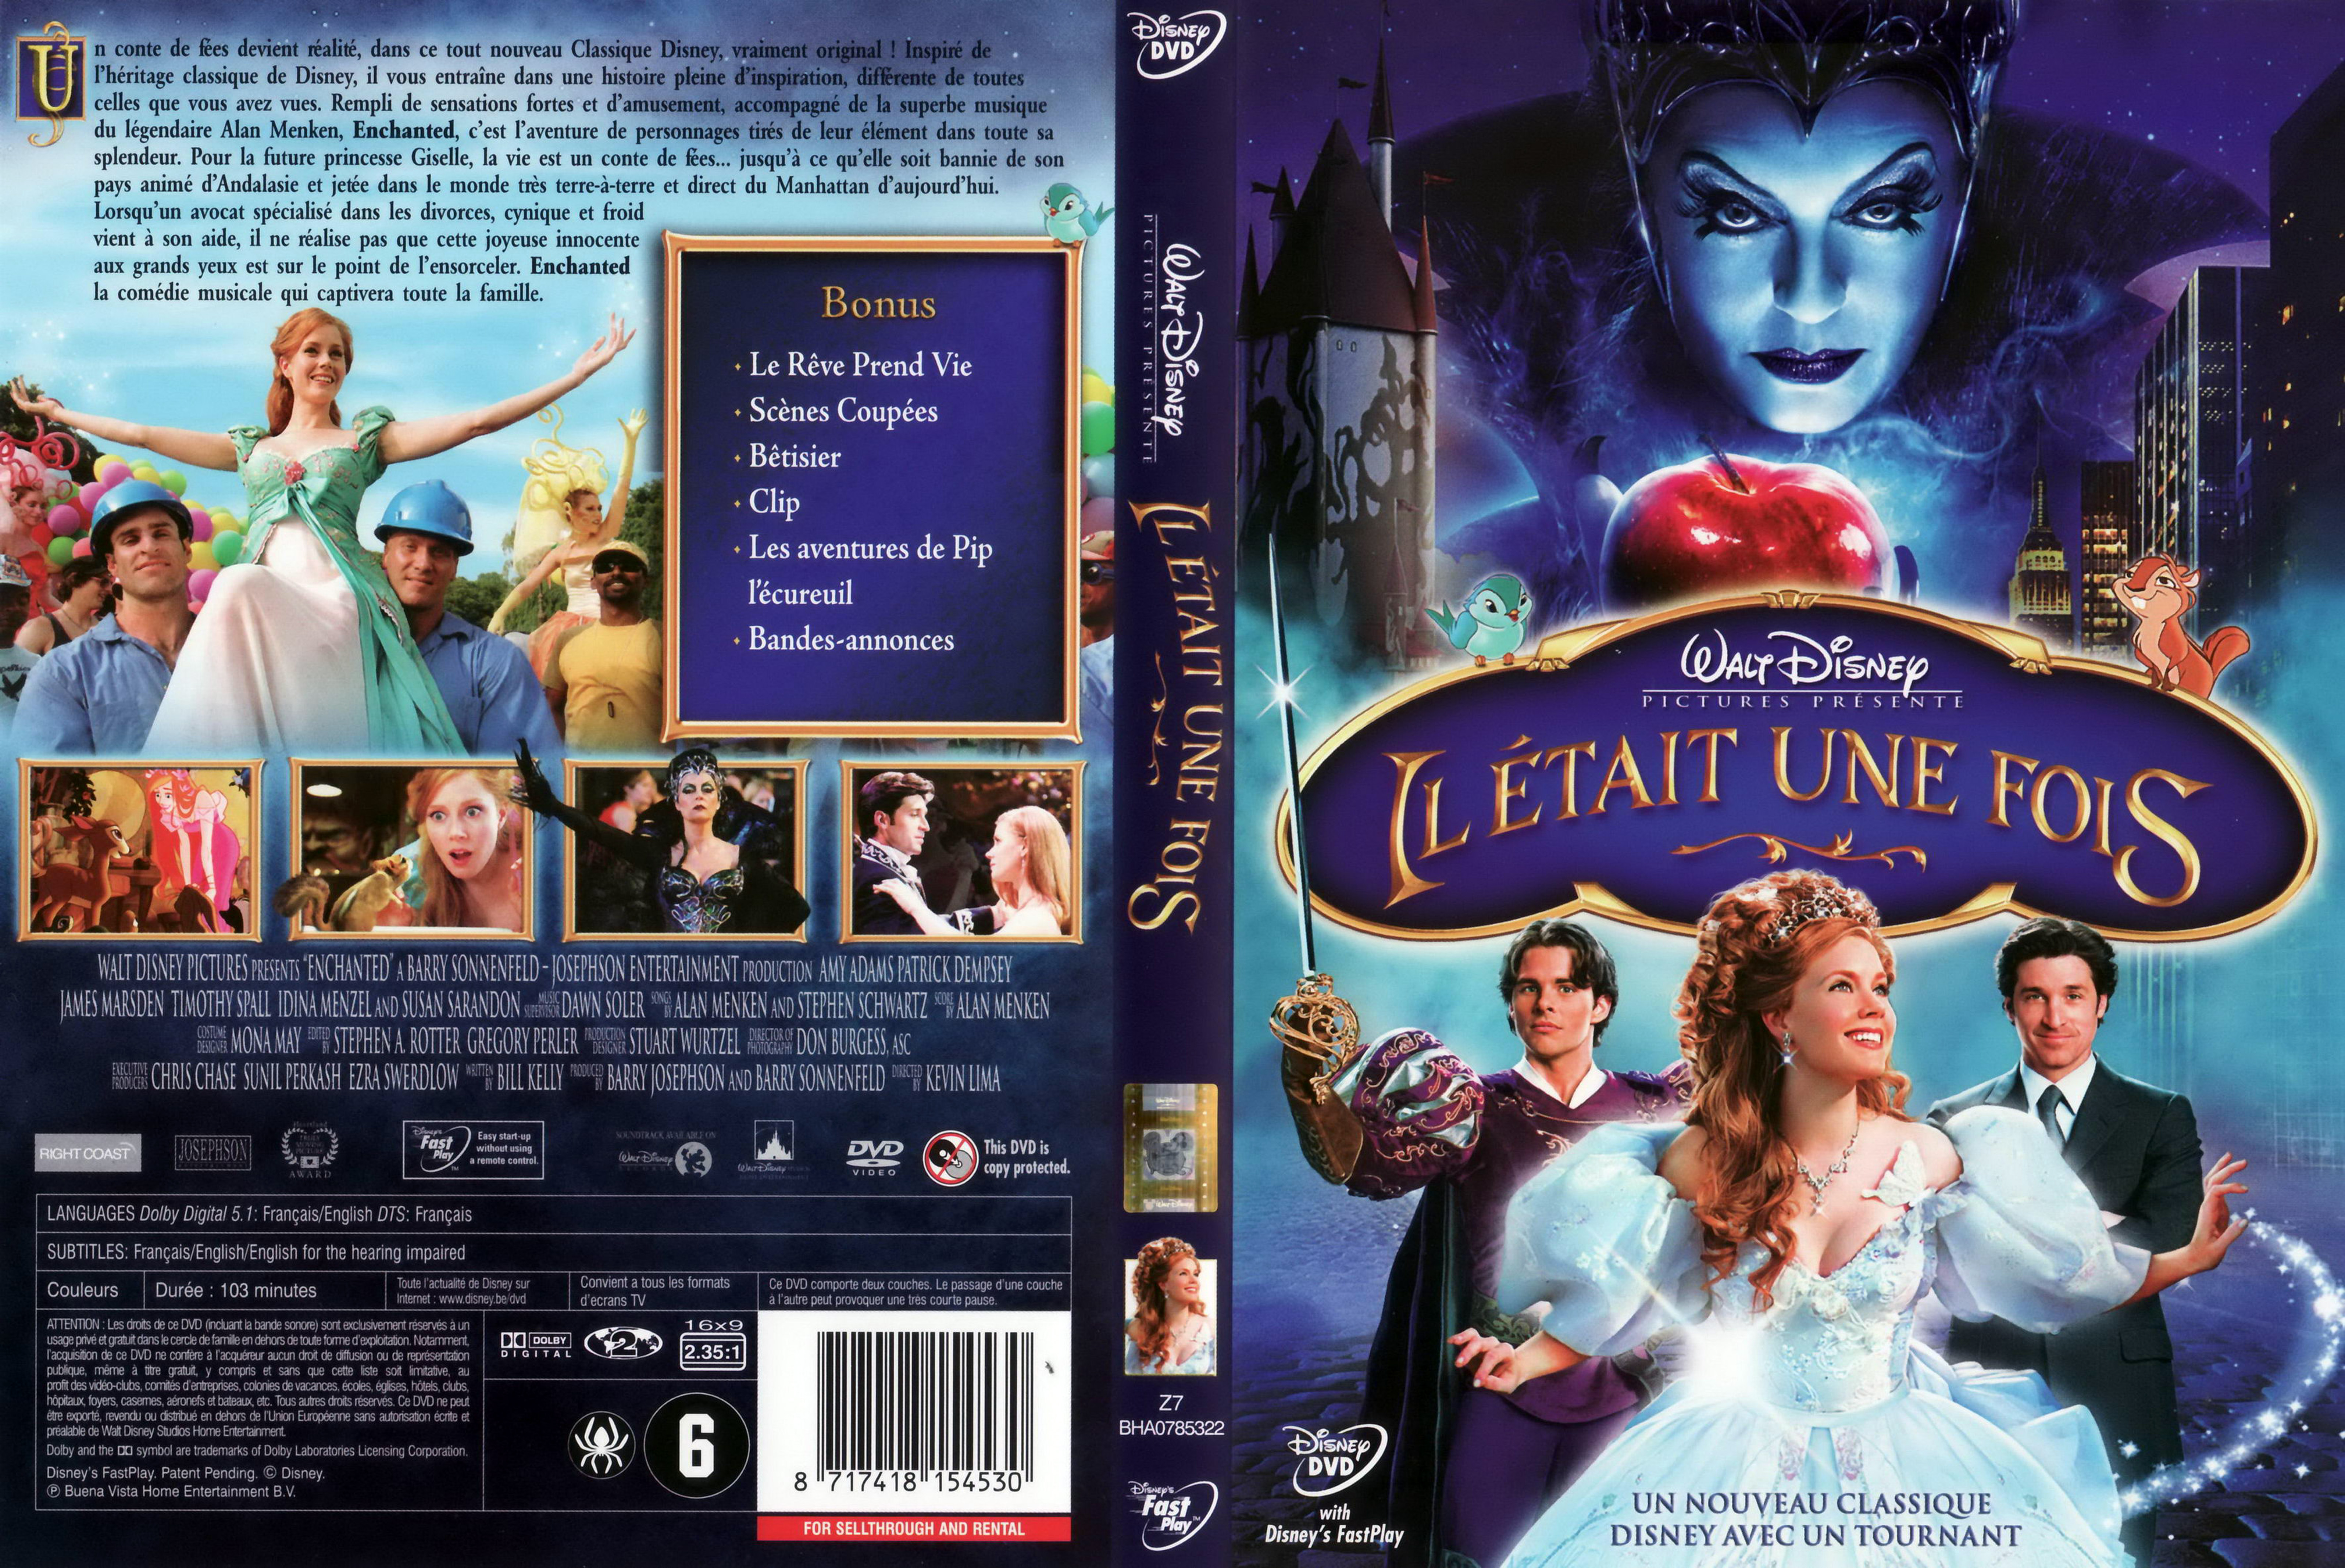 Jaquette DVD Il etait une fois (Disney) v3